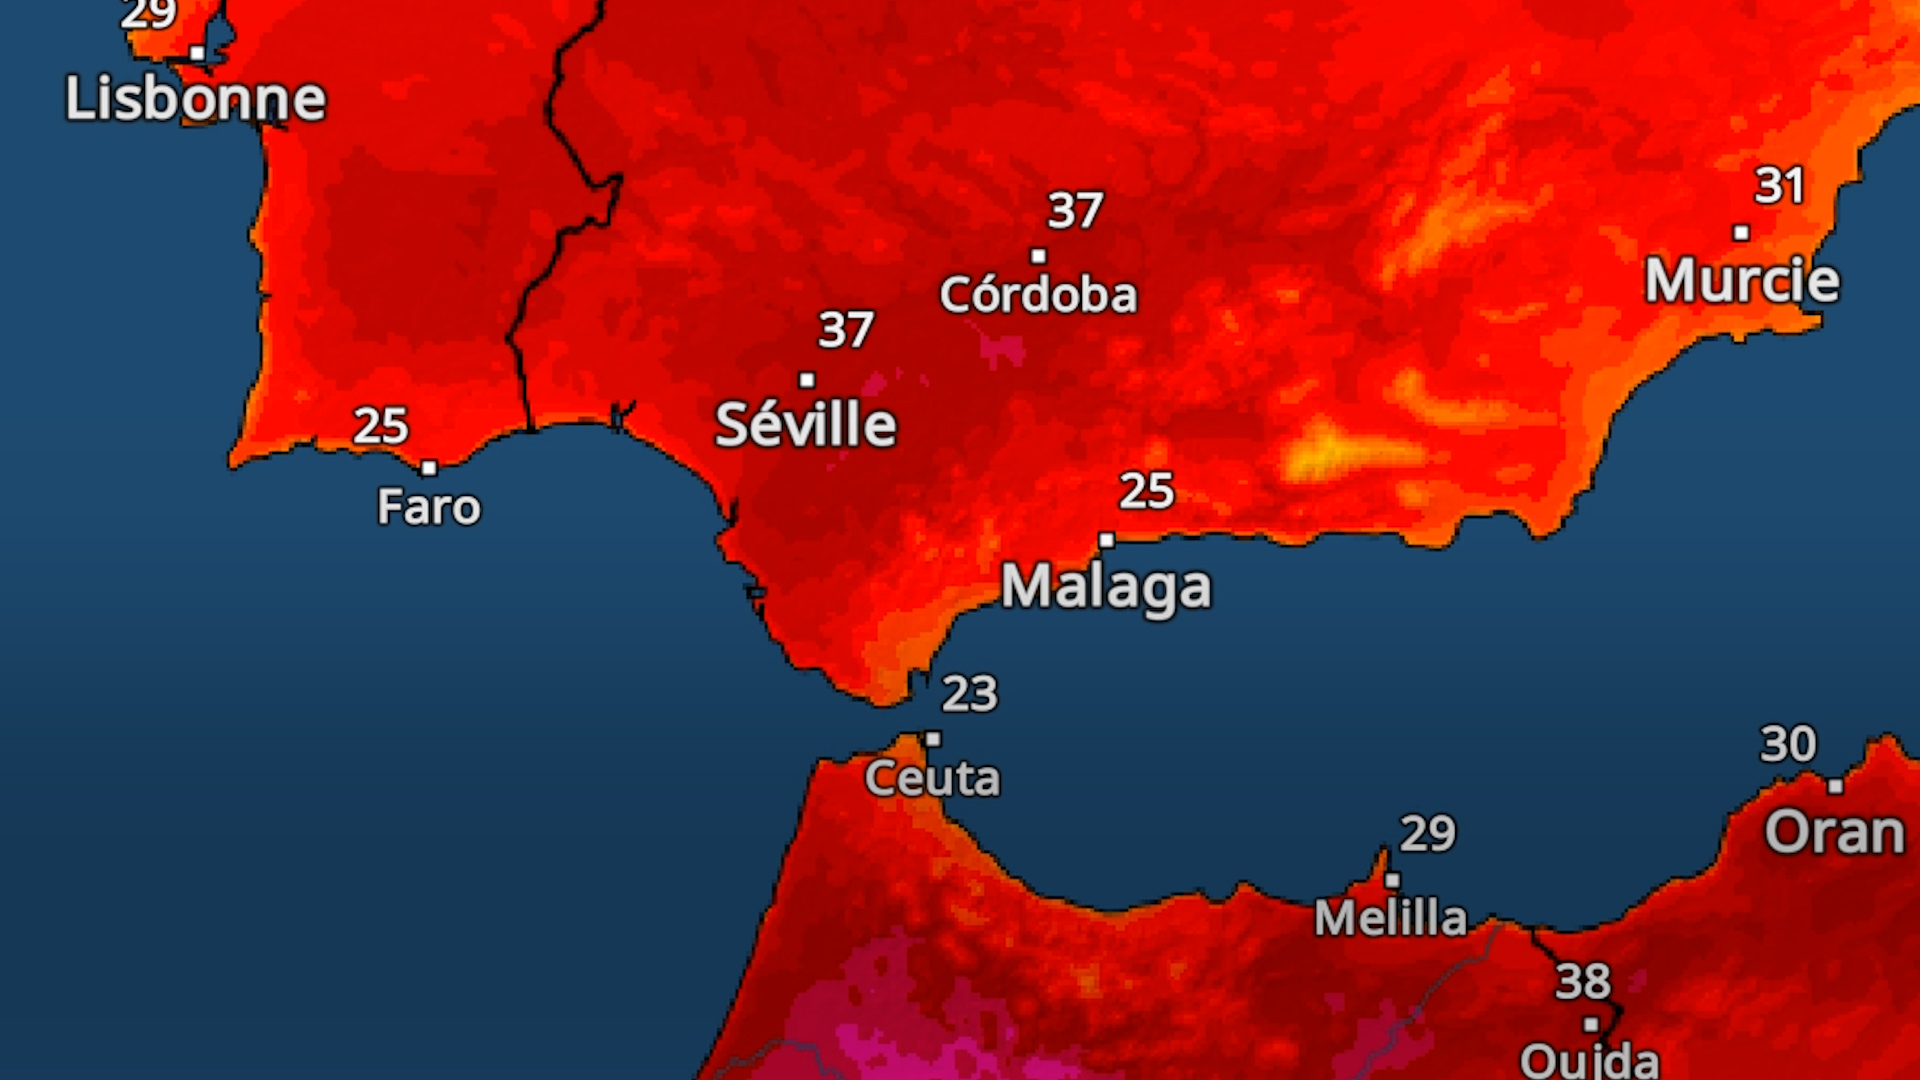 Des températures totalement inédites pour un mois d’avril vont frapper l'Espagne cette semaine, avec des pics à plus de 40 degrés…